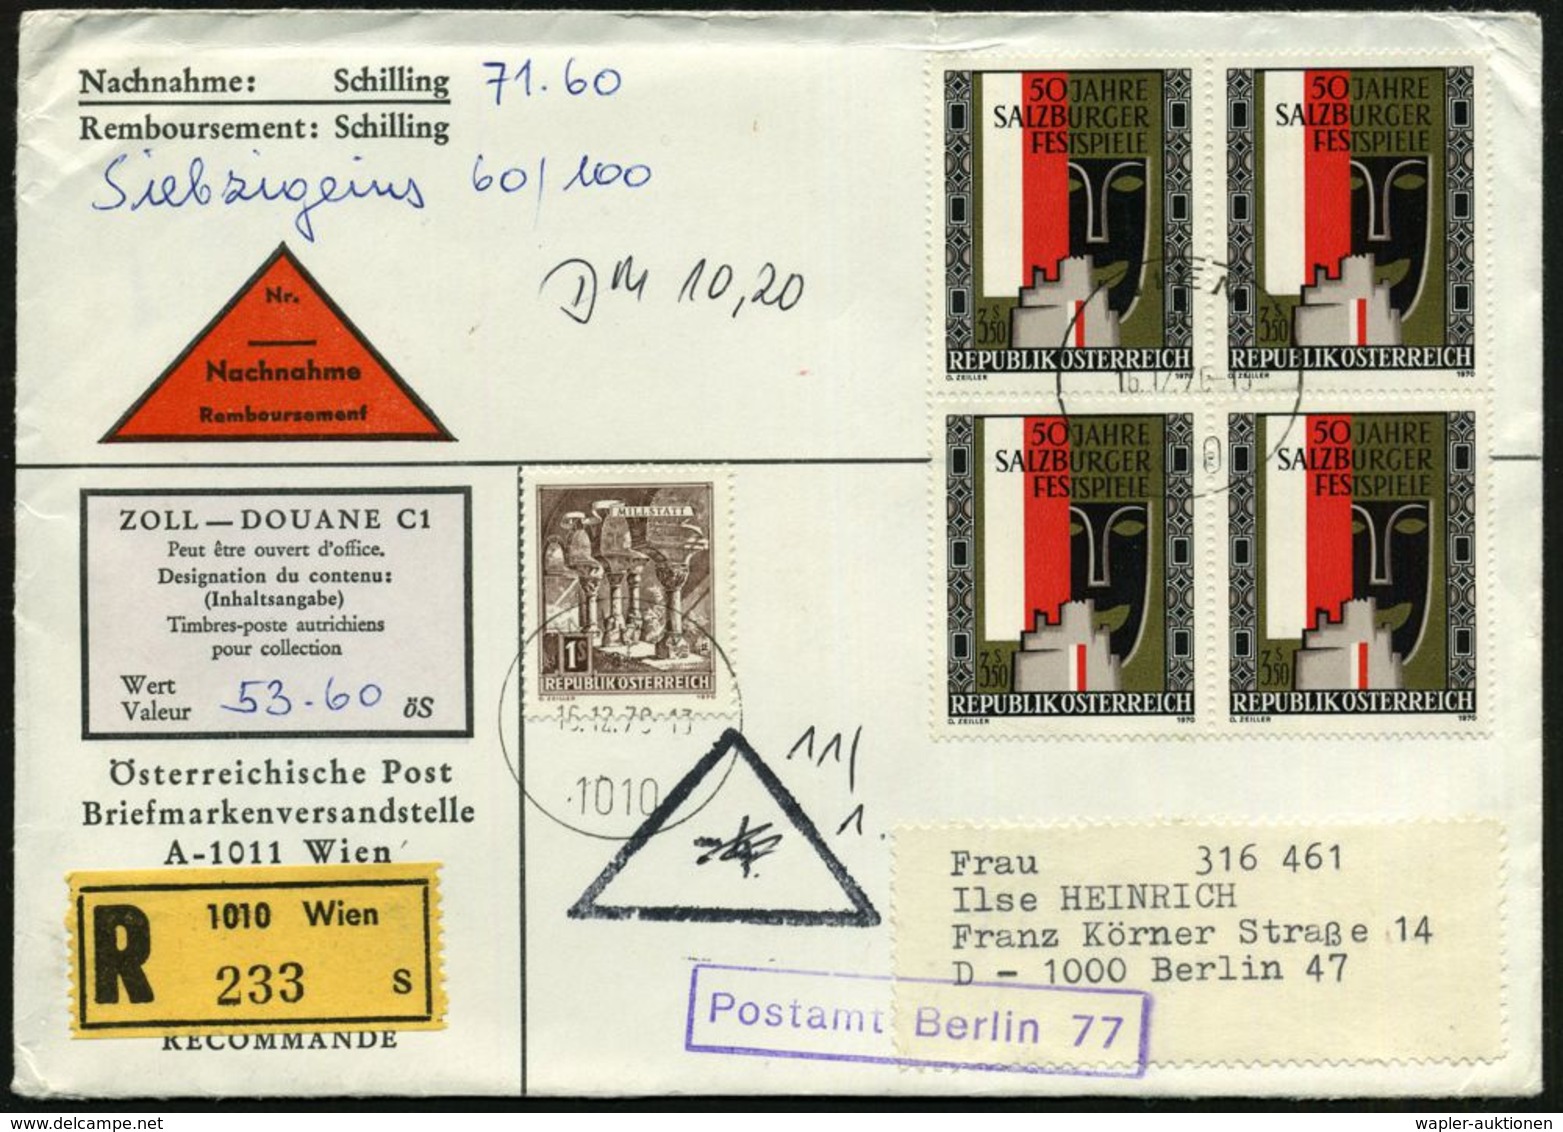 ÖSTERREICH 1960 (16.12.) 3,50 S. "50 Jahre Salzburger Festspiele", 4er-Block U.a. + RZ: 1010 Wien / S = Sammlerservice,  - Musik